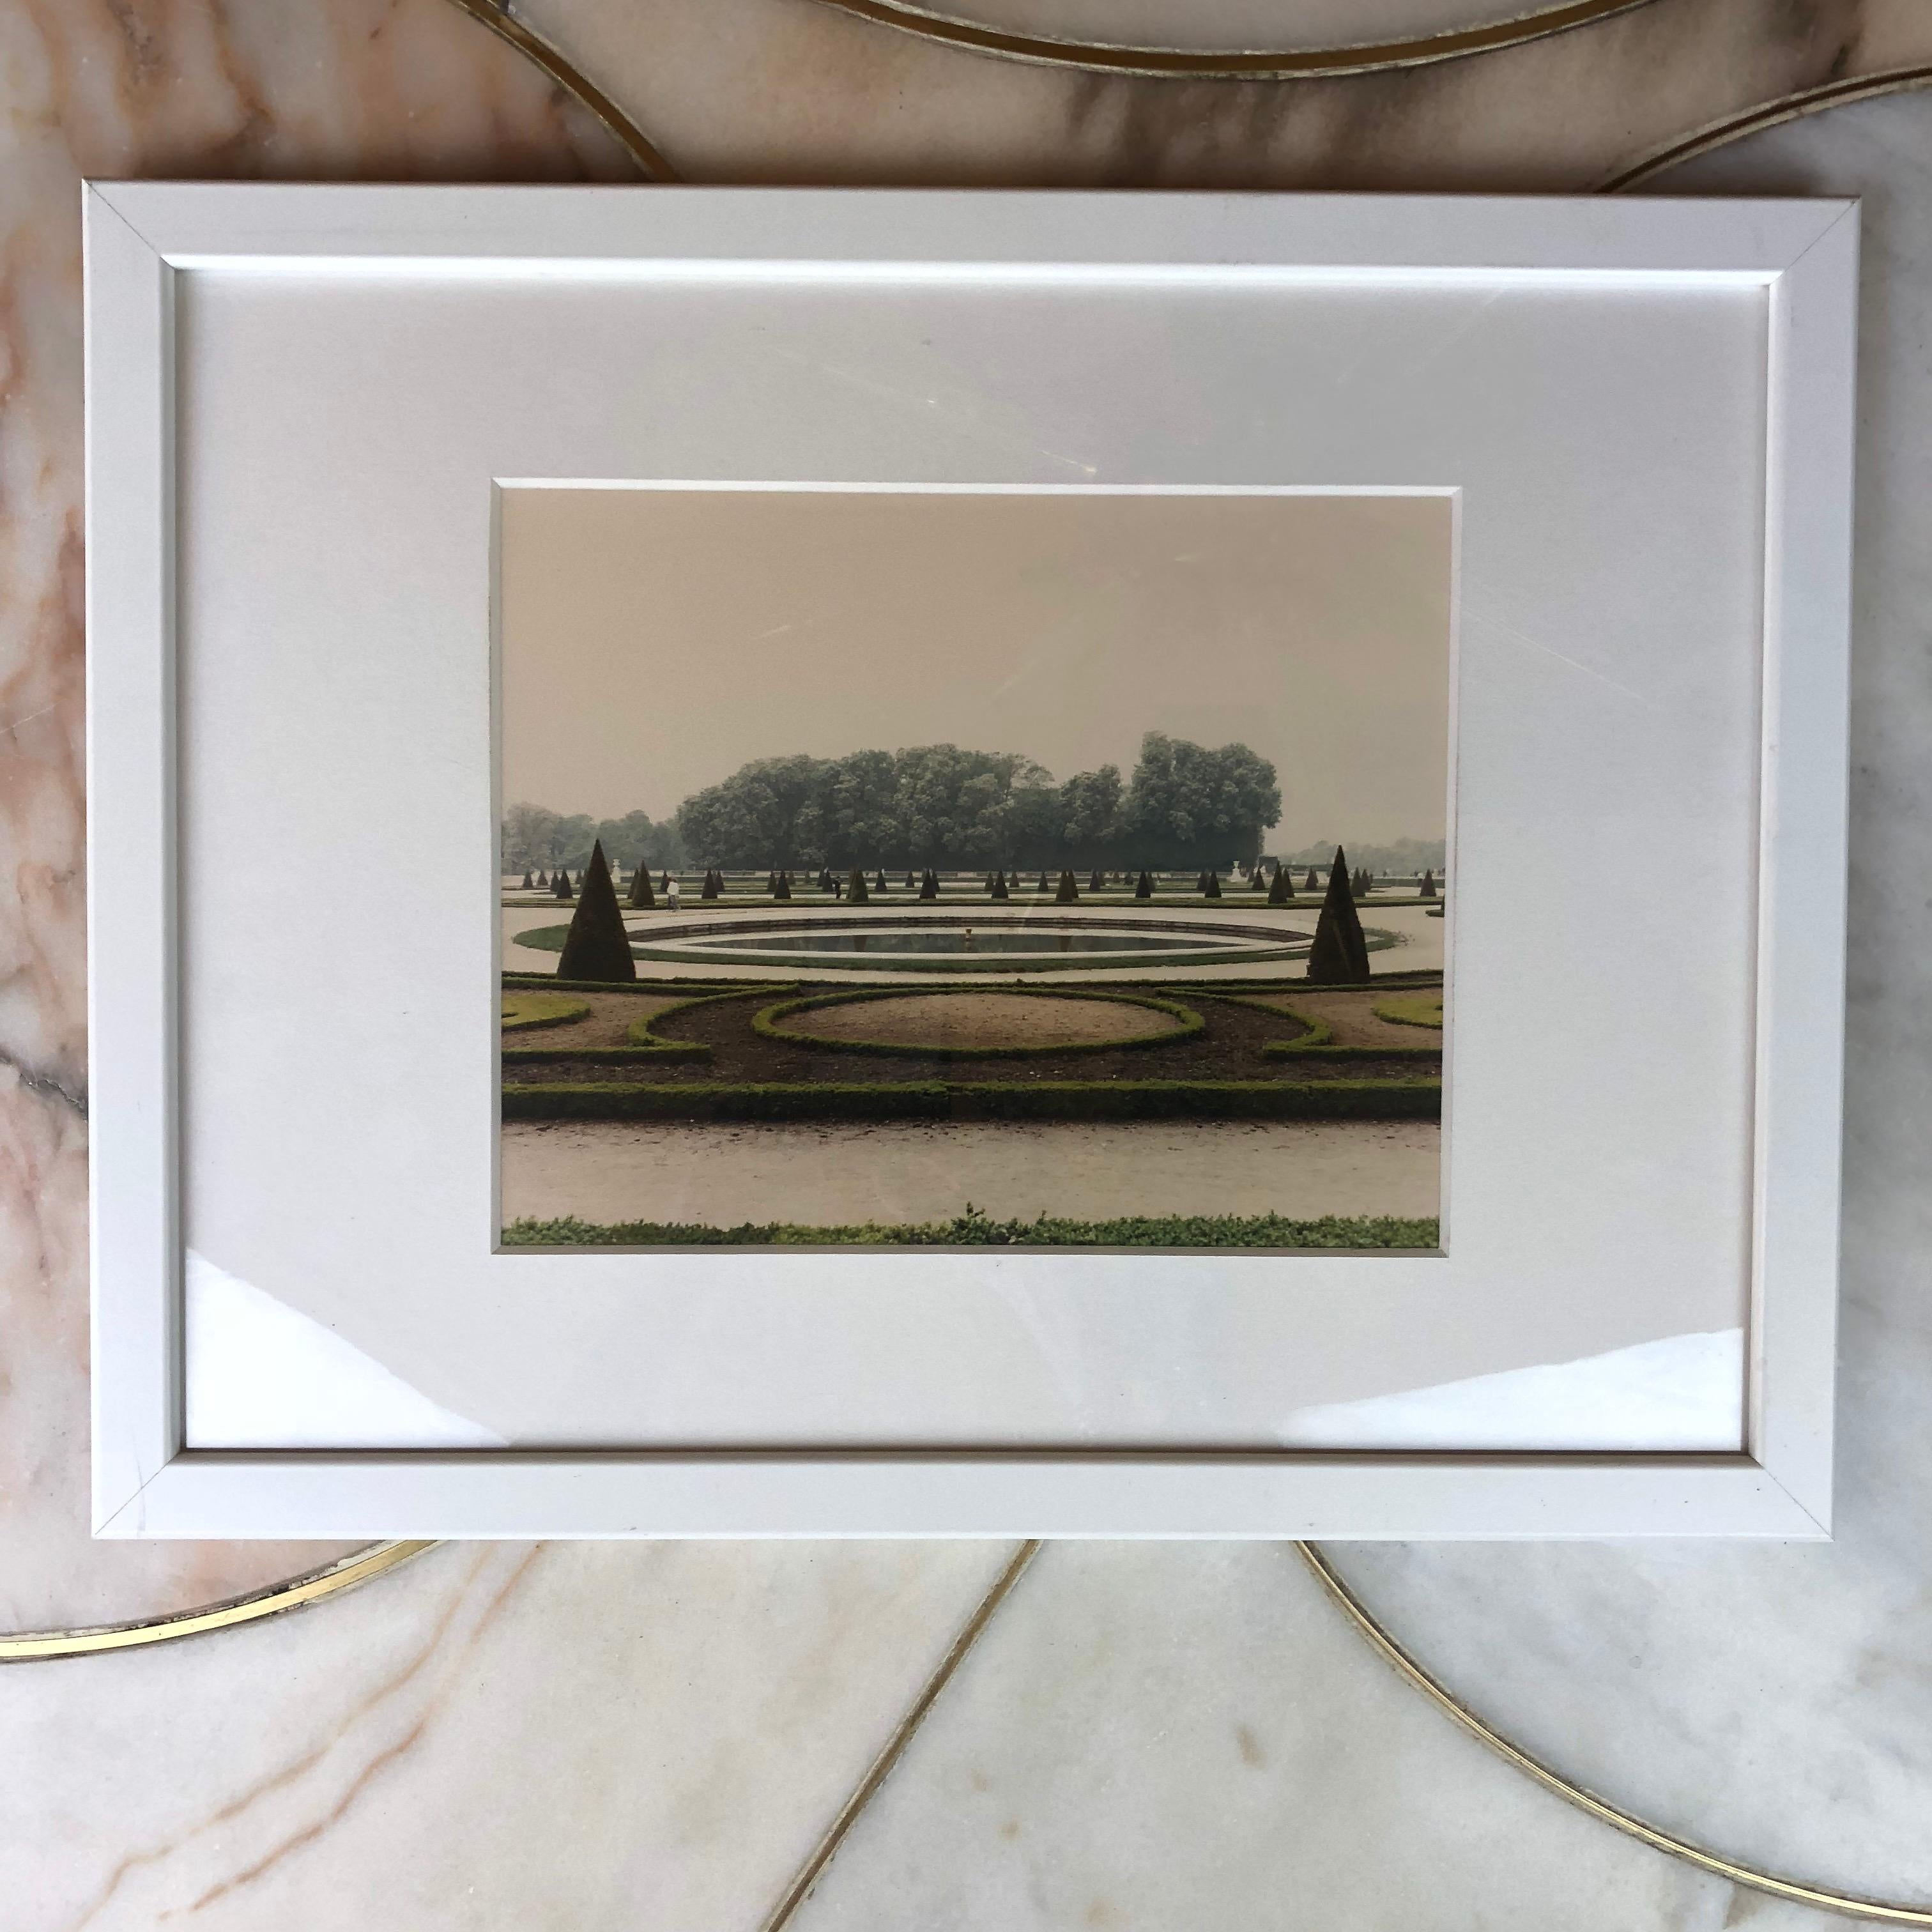 Fin du 20e siècle Versailles 1985, Luigi Ghirri, photographie chromogénique provenant d'une copie négatife/un exemplaire unique en vente